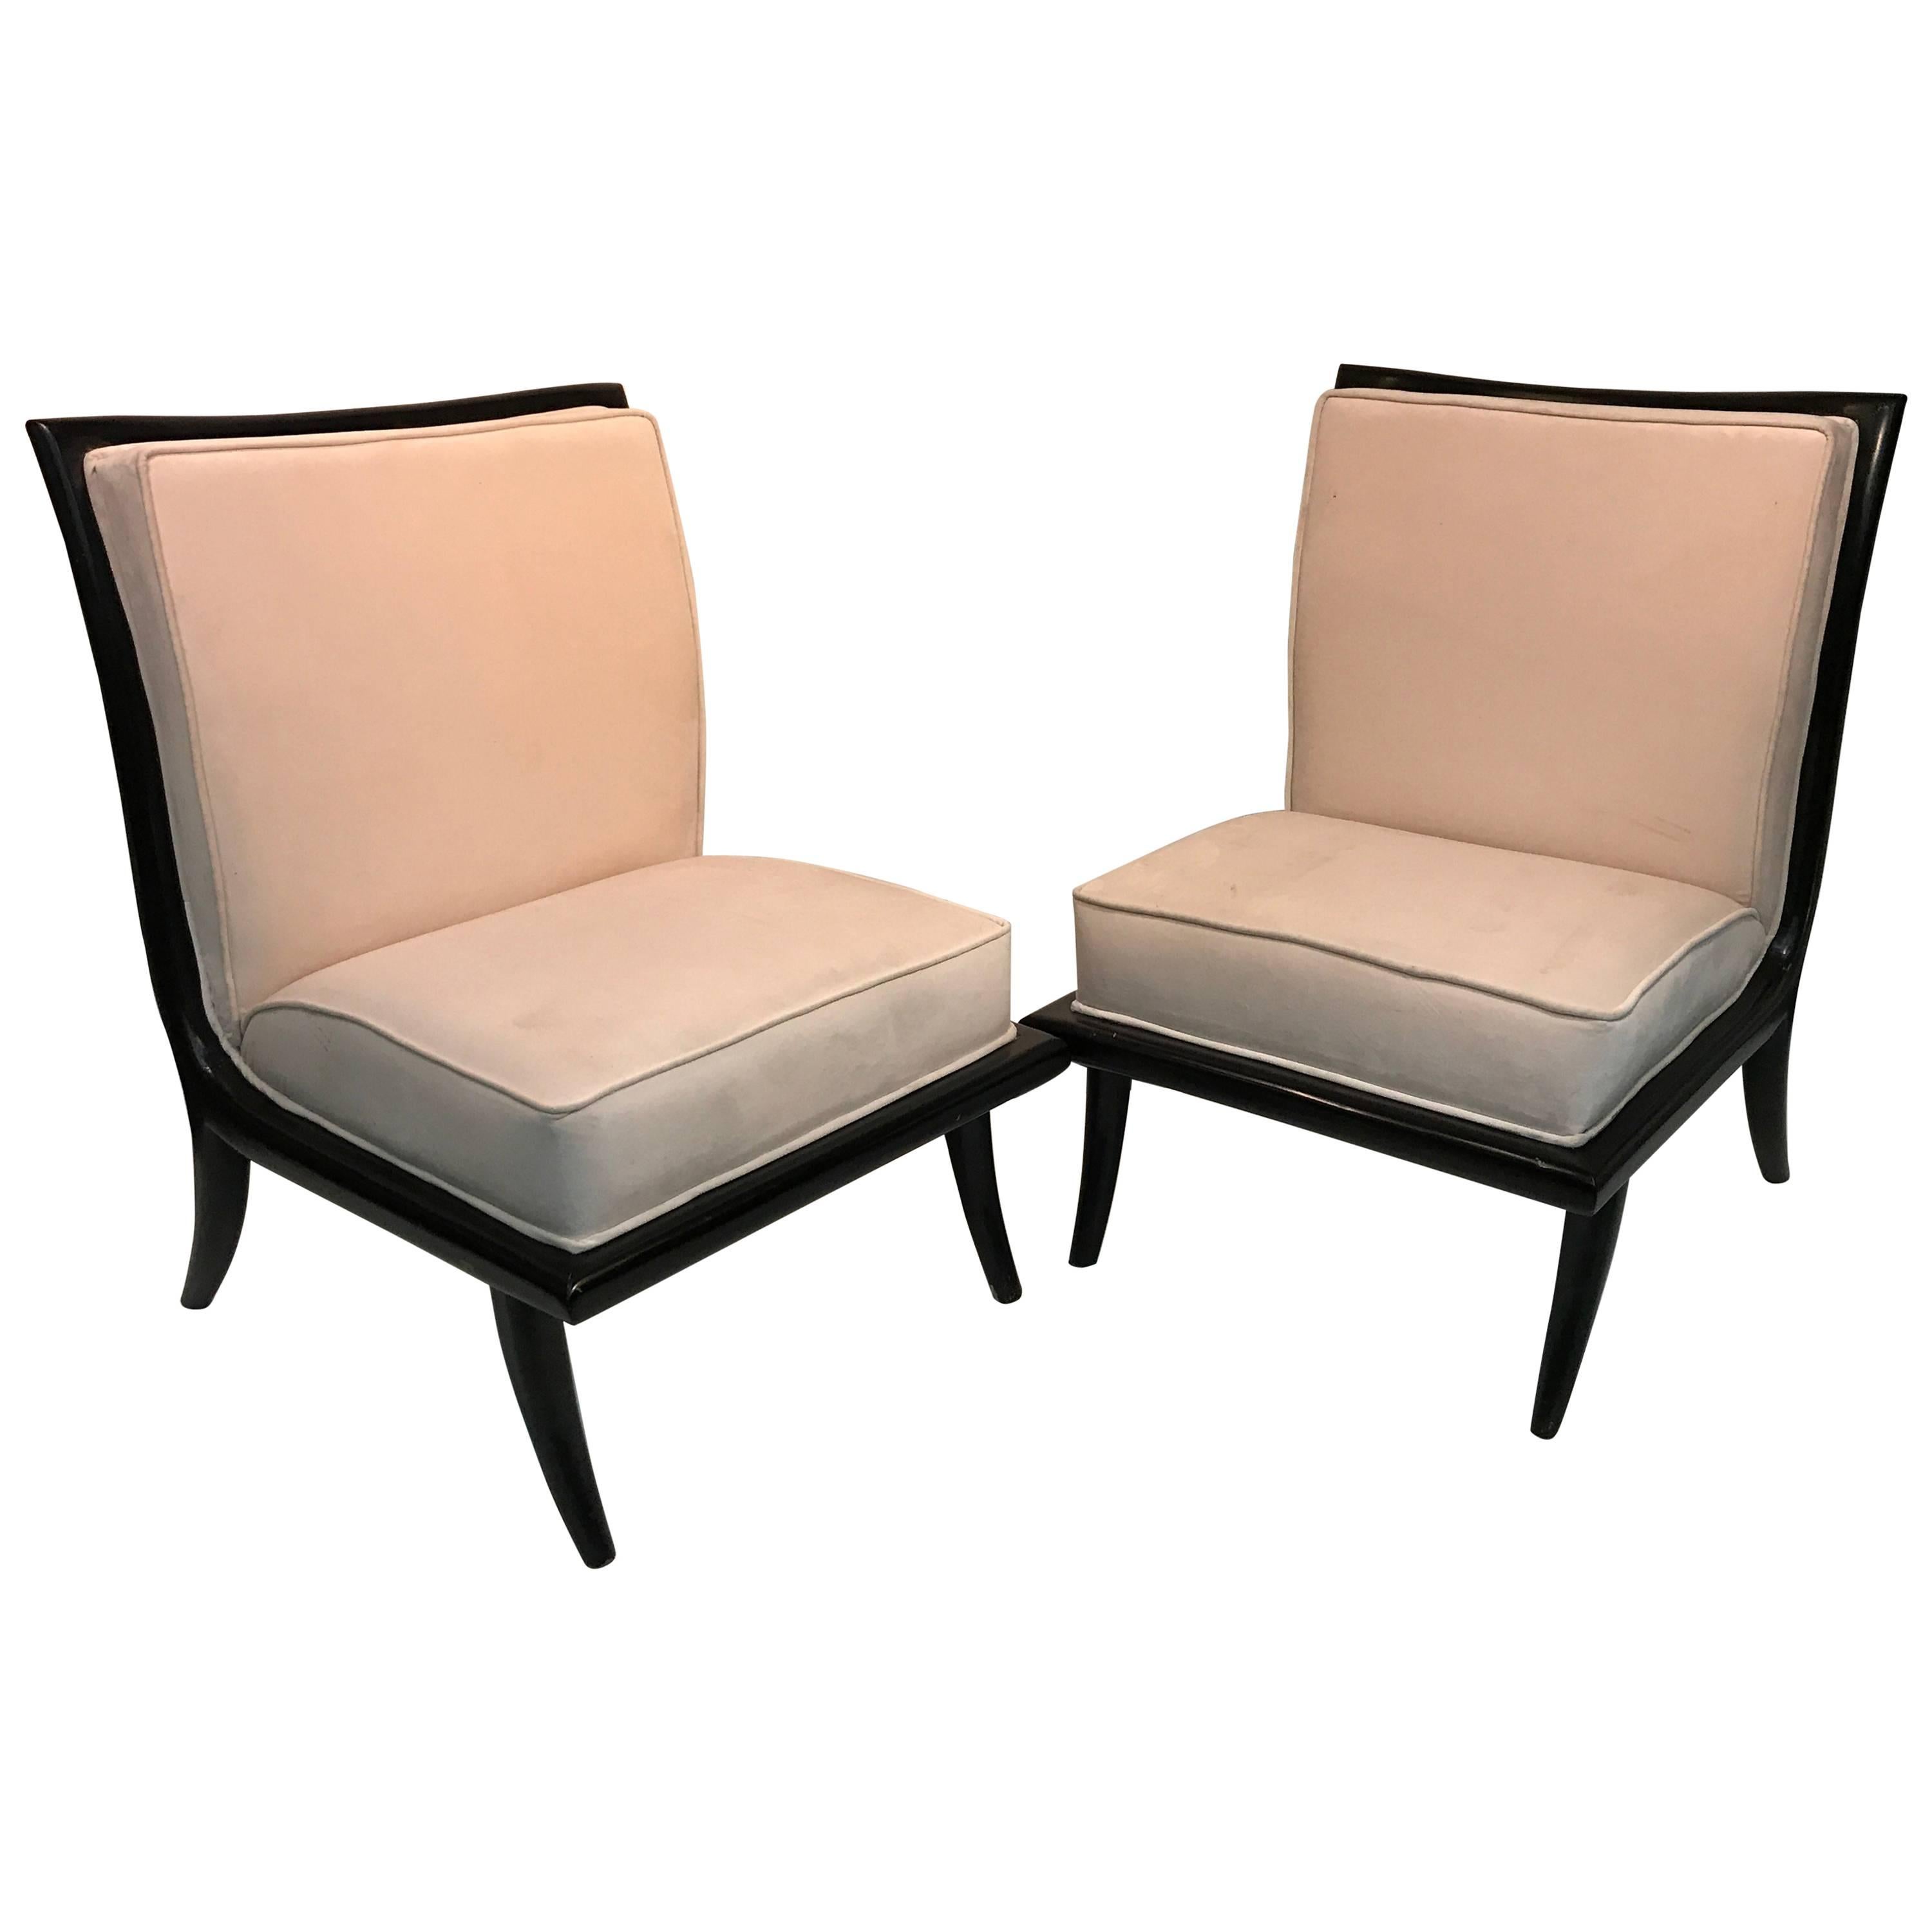 Glamorous Pair of White Velvet Slipper Chairs with Curved Elegant Legs For Sale